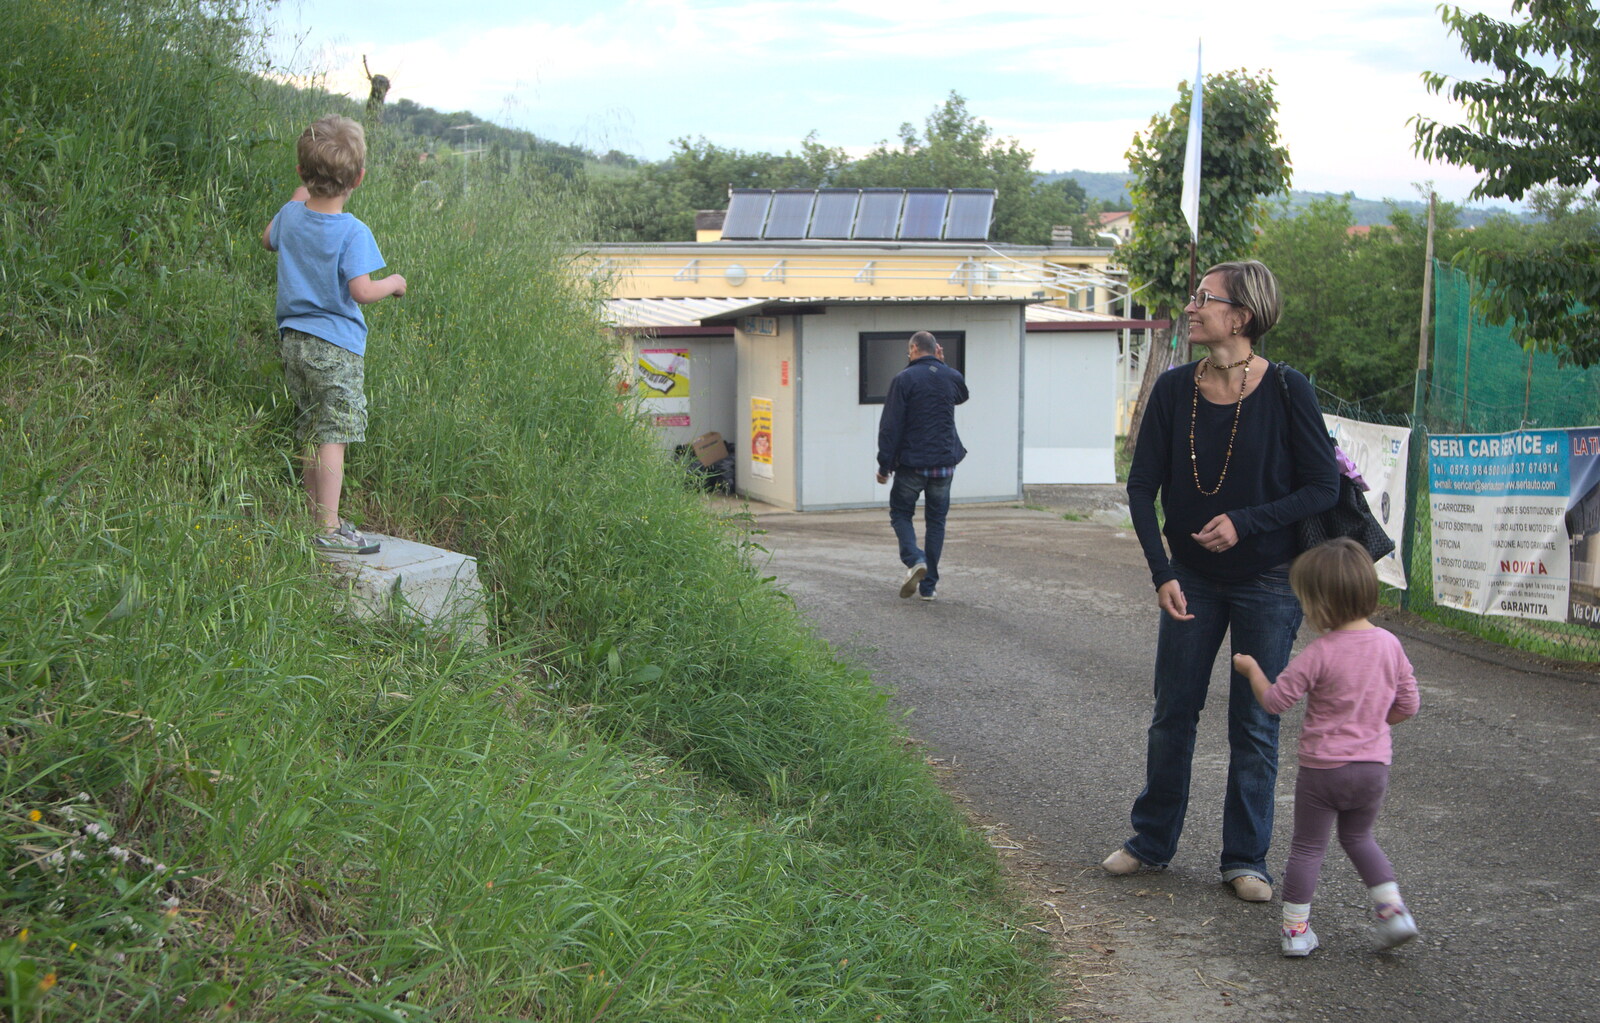 Marconi, Arezzo and the Sagra del Maccherone Festival, Battifolle, Tuscany - 9th June 2013: Fred up a hill